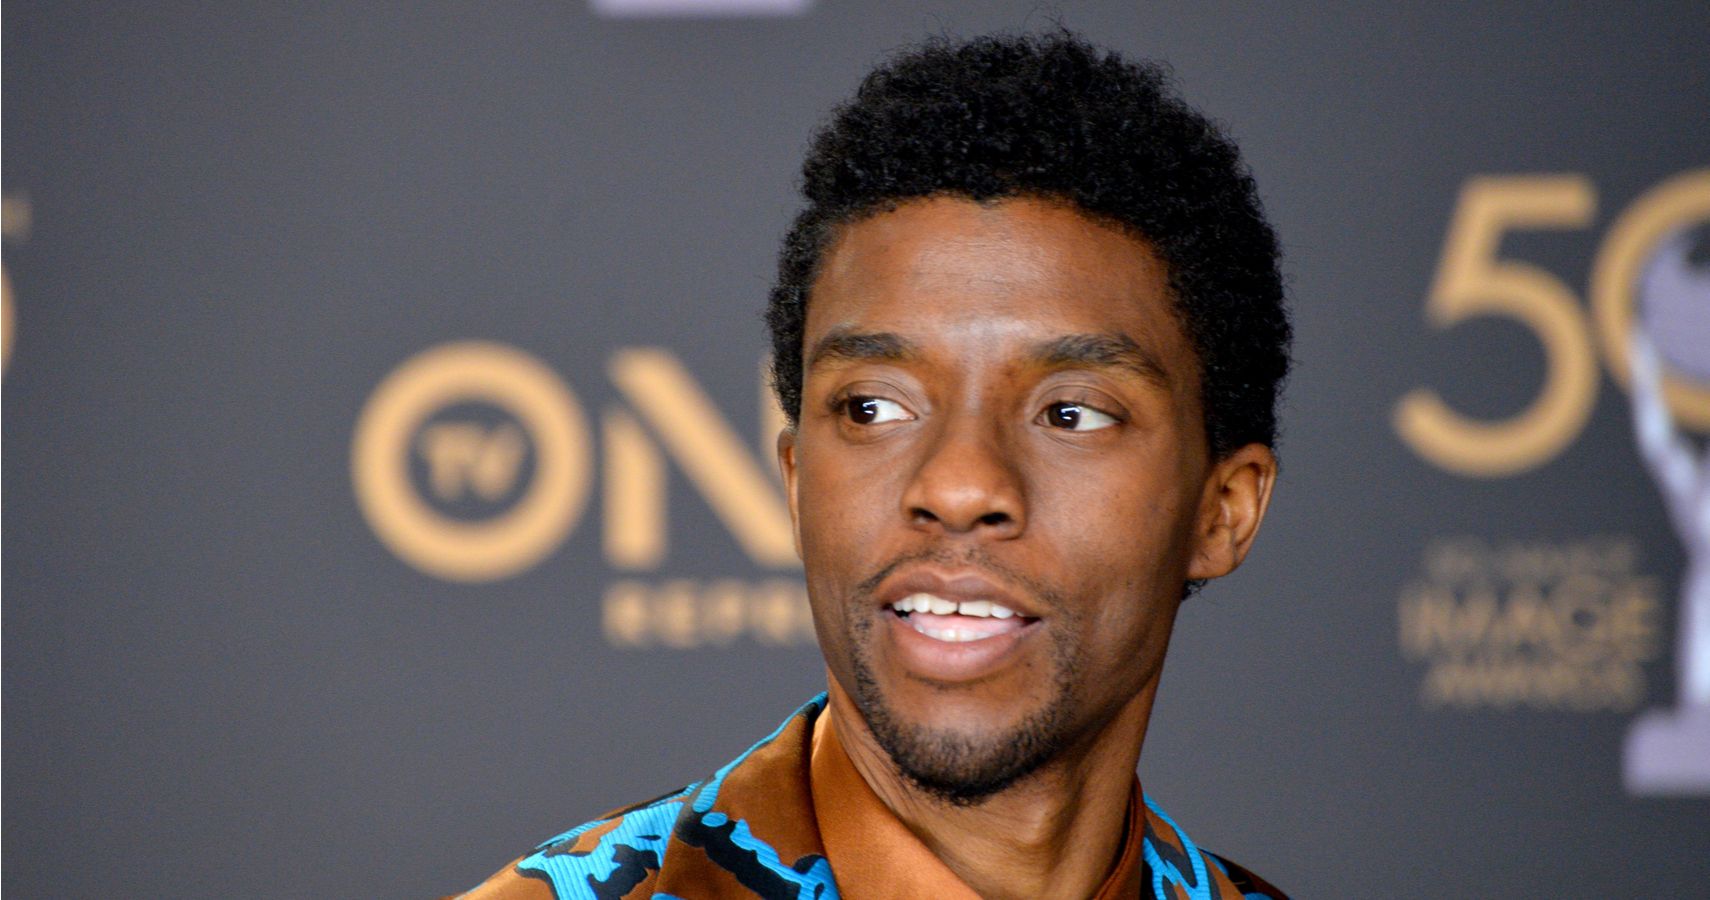 Os fãs reagem ao “Pantera Negra” em homenagem a Chadwick Boseman com o título de novo filme